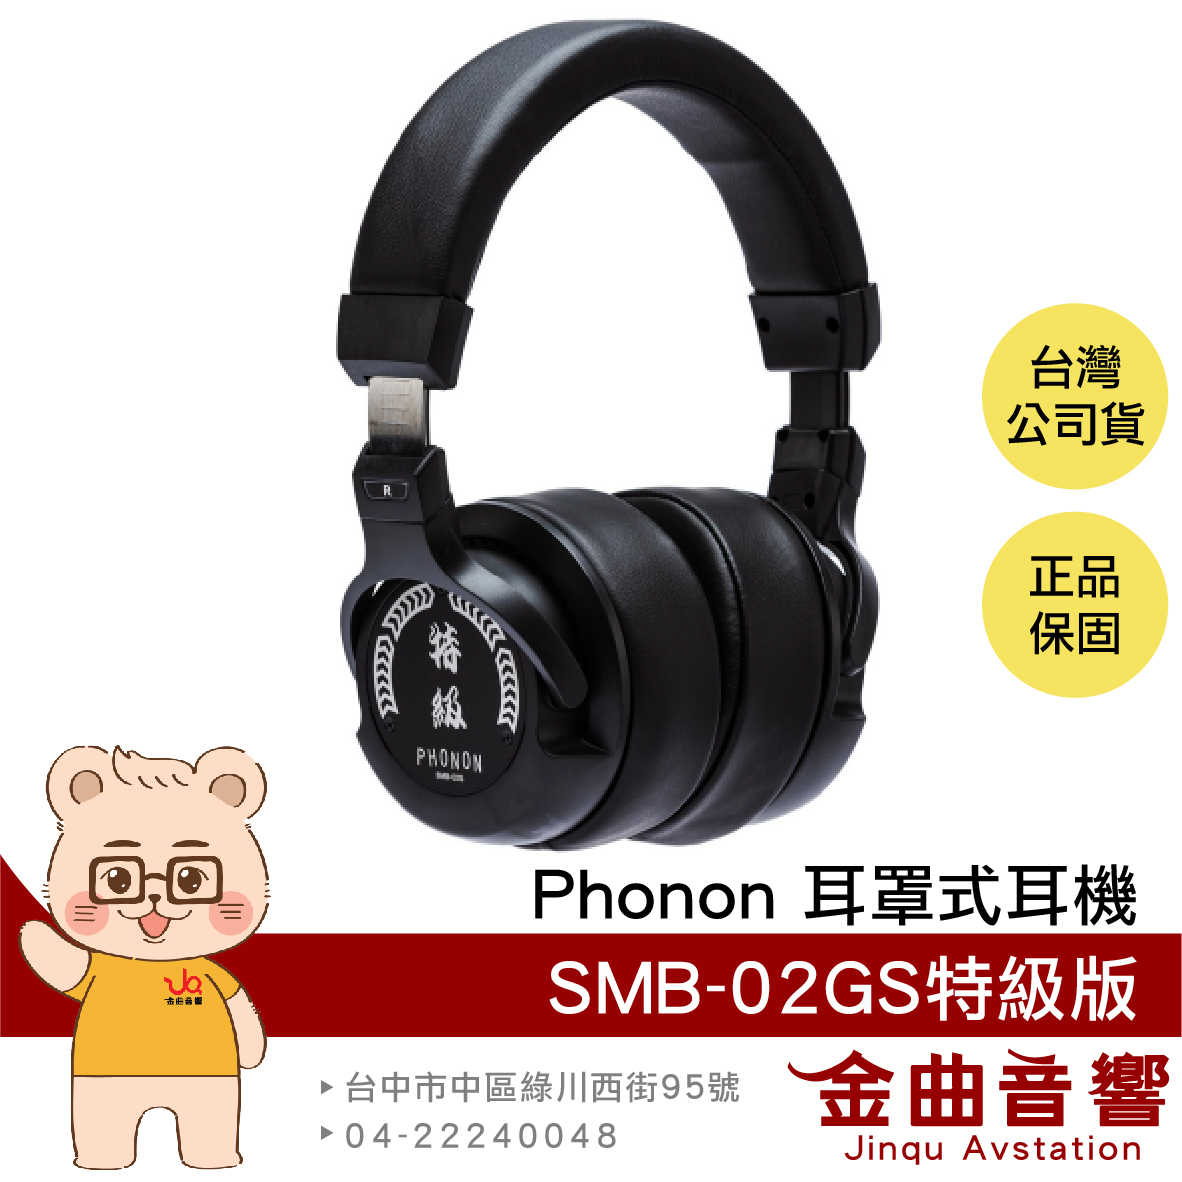 Phonon SMB-02GS 密閉式 半開放式 限定 特級版 錄音 旗艦 監聽 耳罩 耳機 | 金曲音響